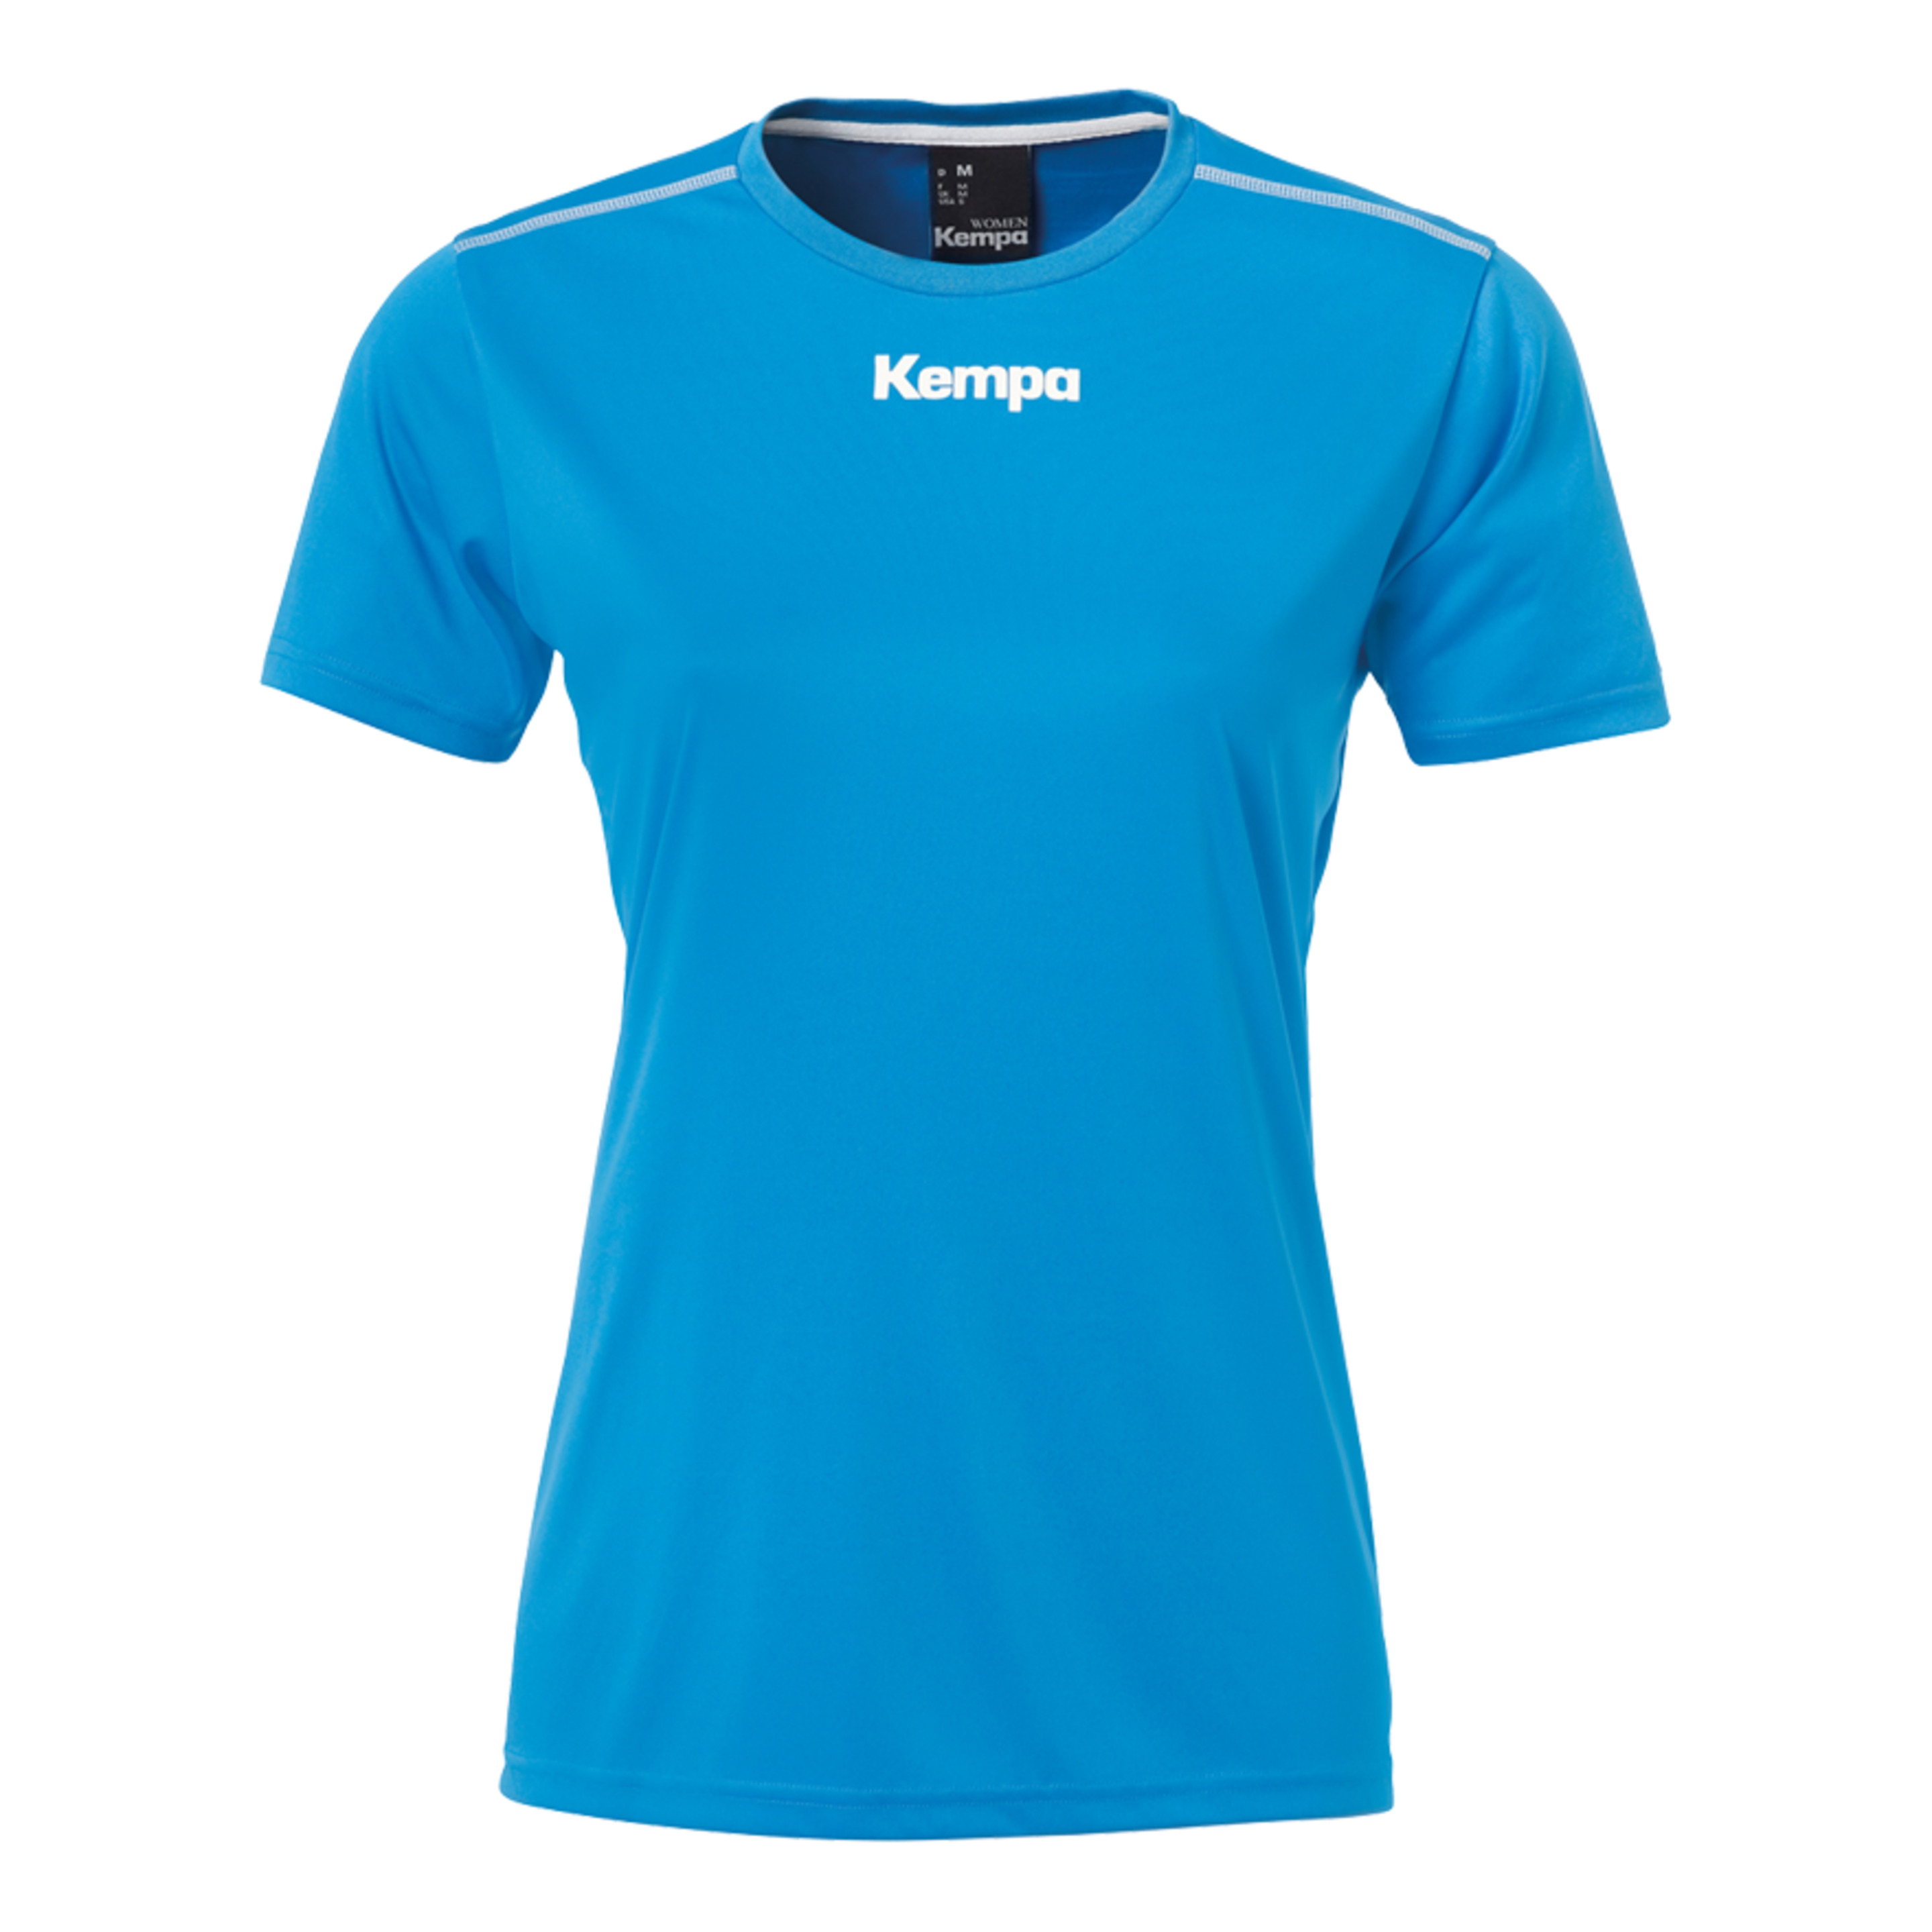 Poly Shirt De Mujer Kempa Azul Kempa - azul - 